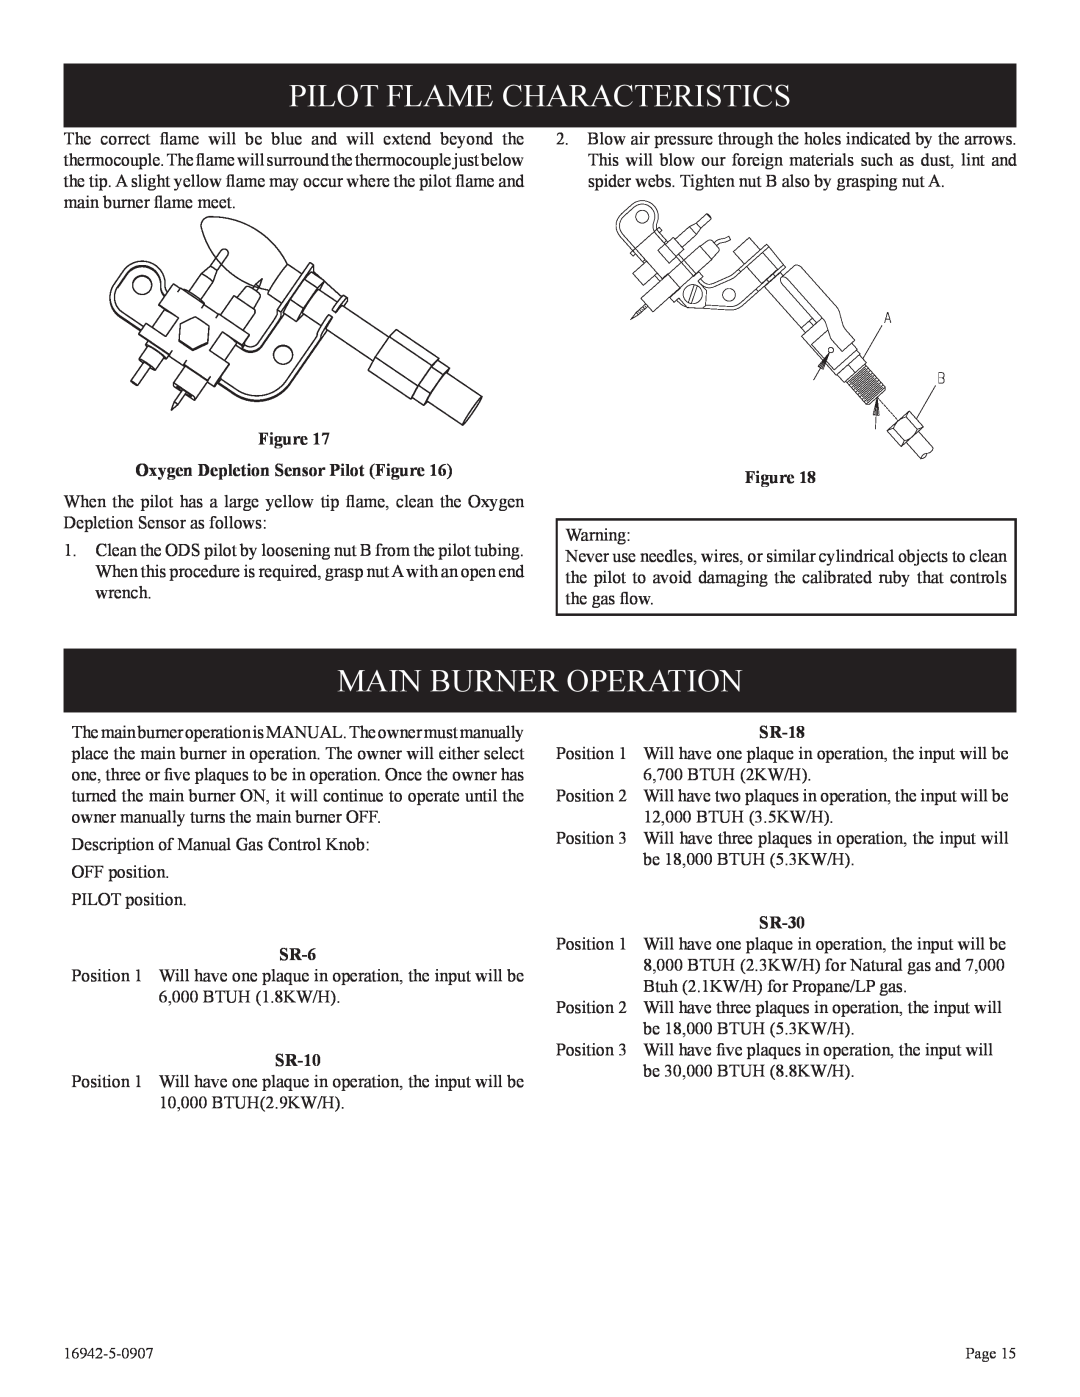 Empire Comfort Systems SR-30 Pilot Flame Characteristics, Main Burner Operation, SR-6, SR-10, SR-18 